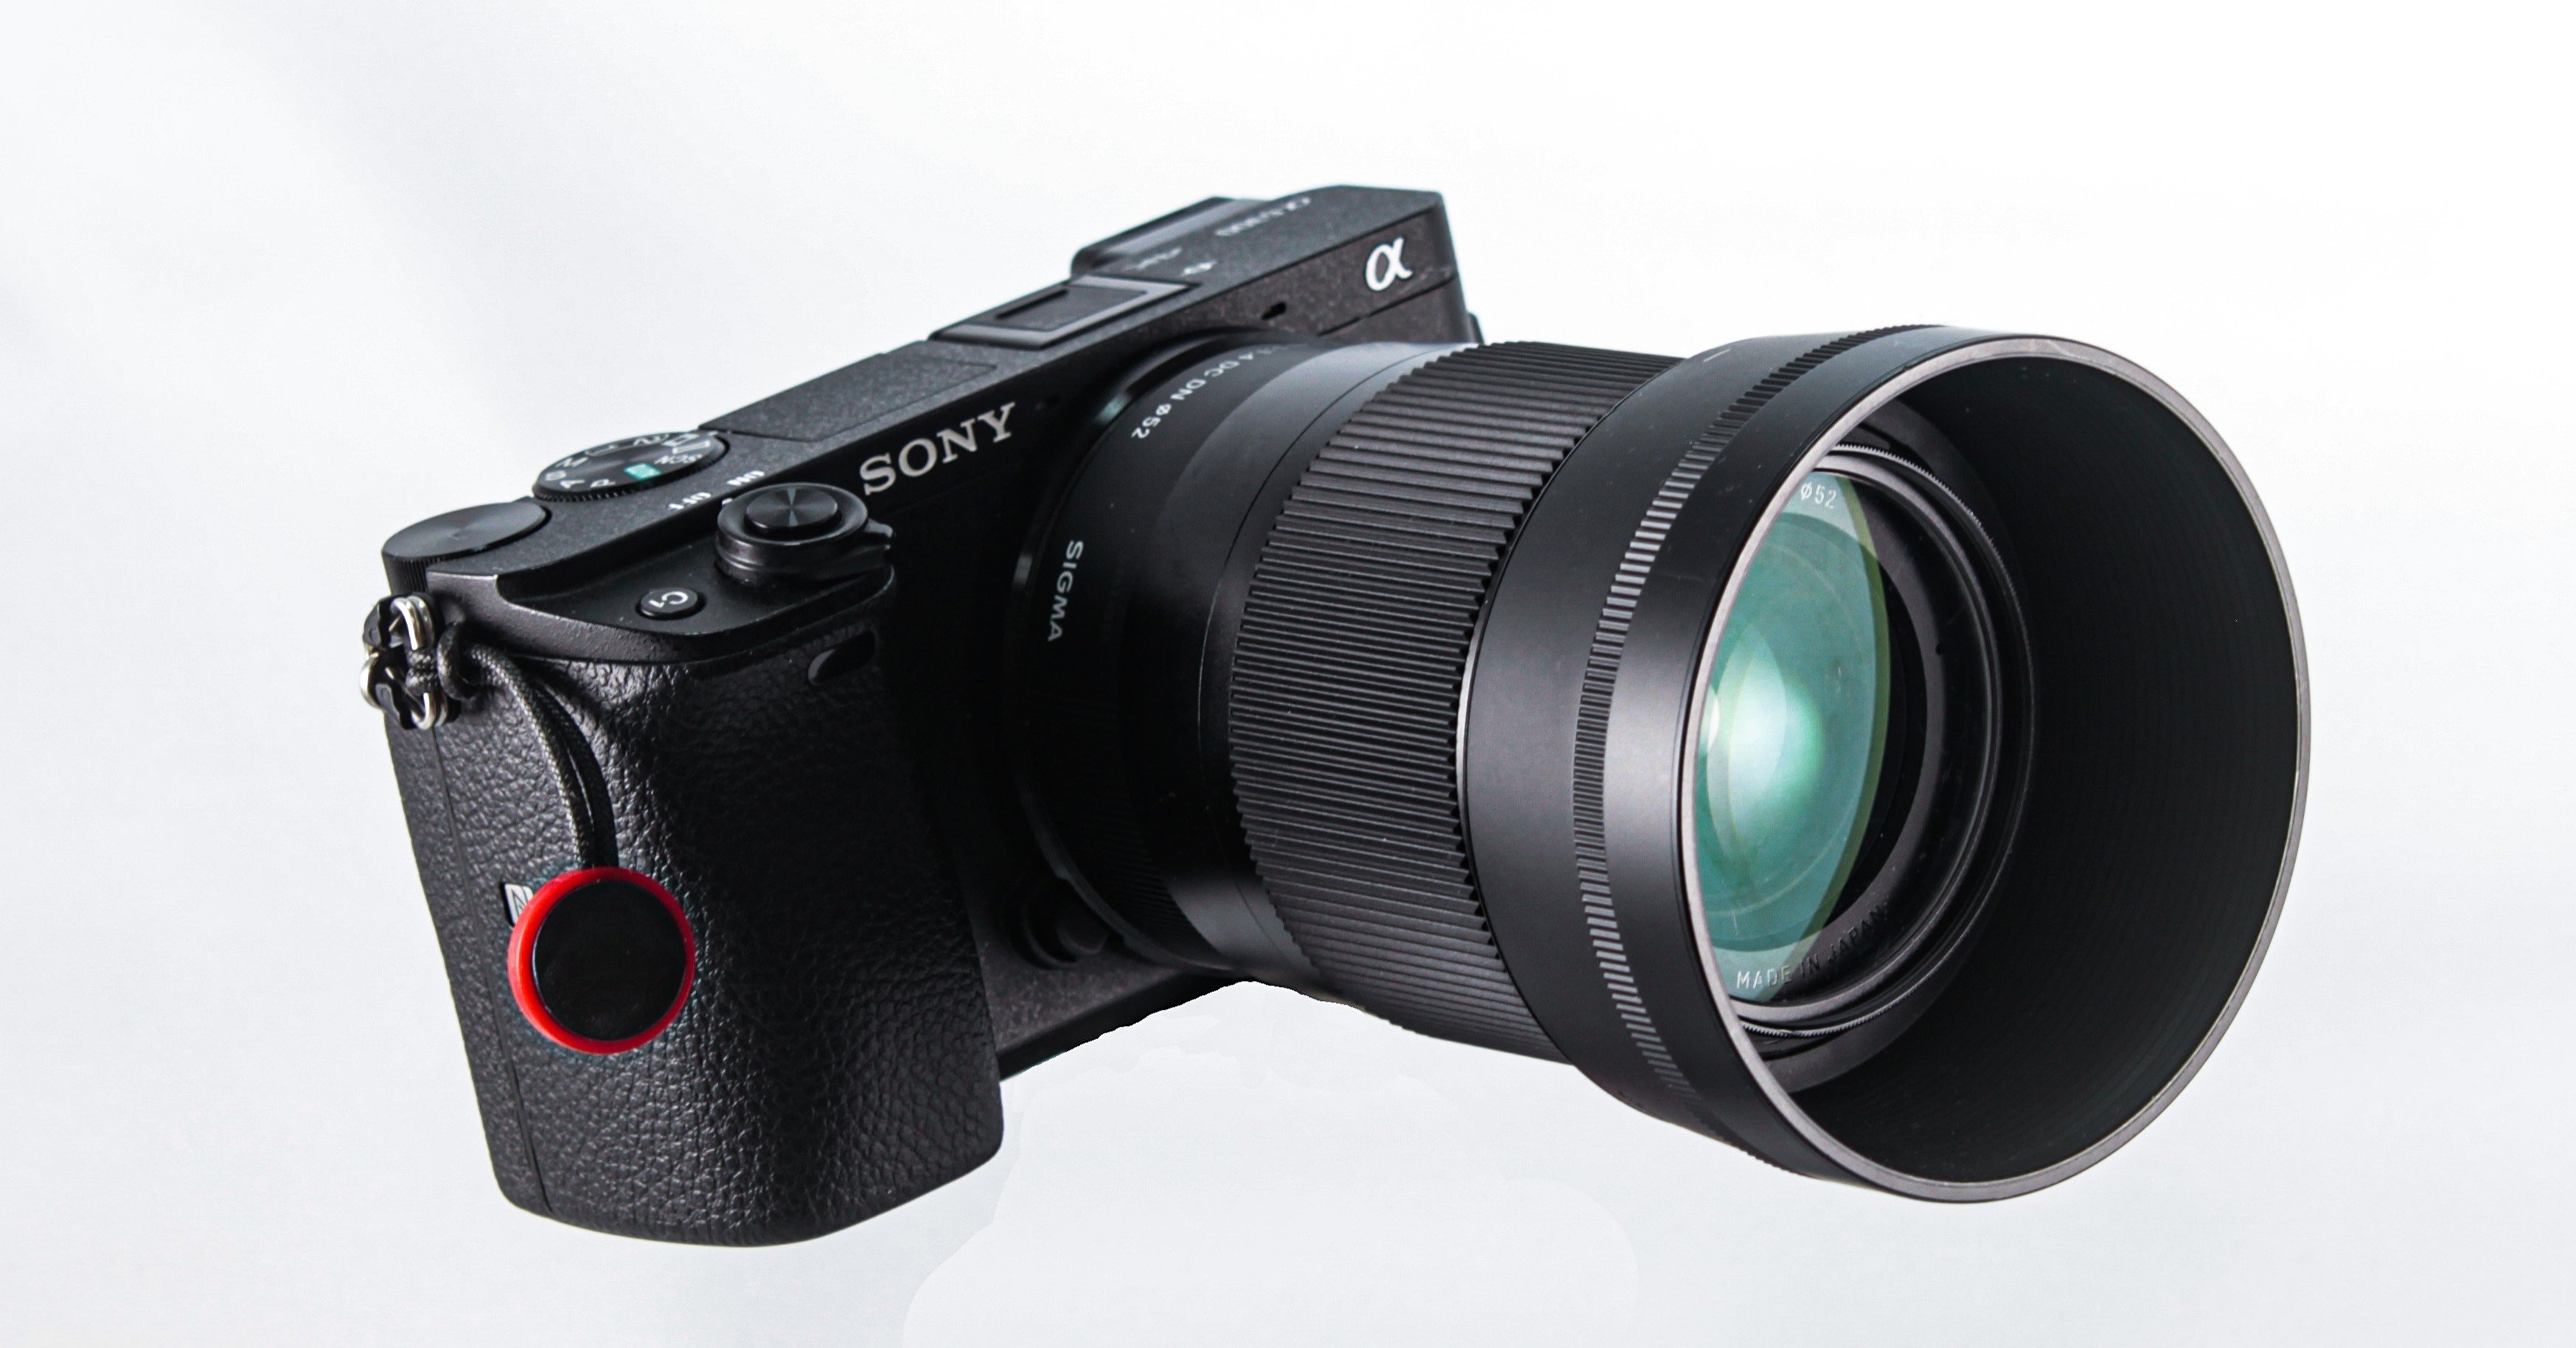 Sonyのカメラをwebカメラとして使う方法 追加購入物無し Tetsu K Note